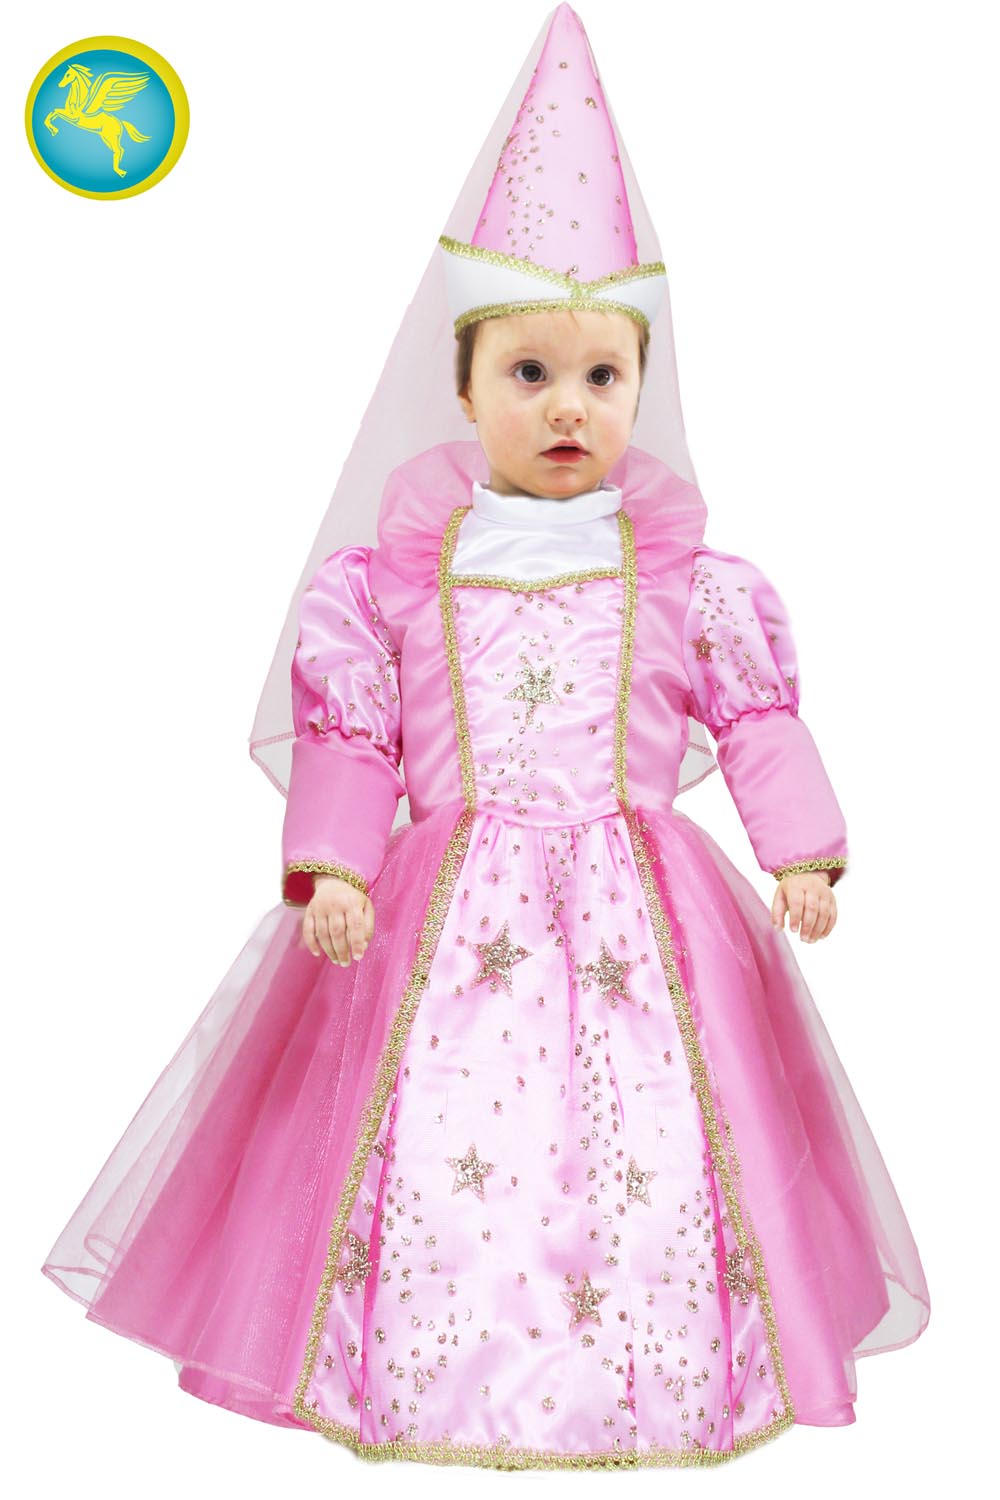 Costume di carnevale per bambina - Fatina rosa Baby